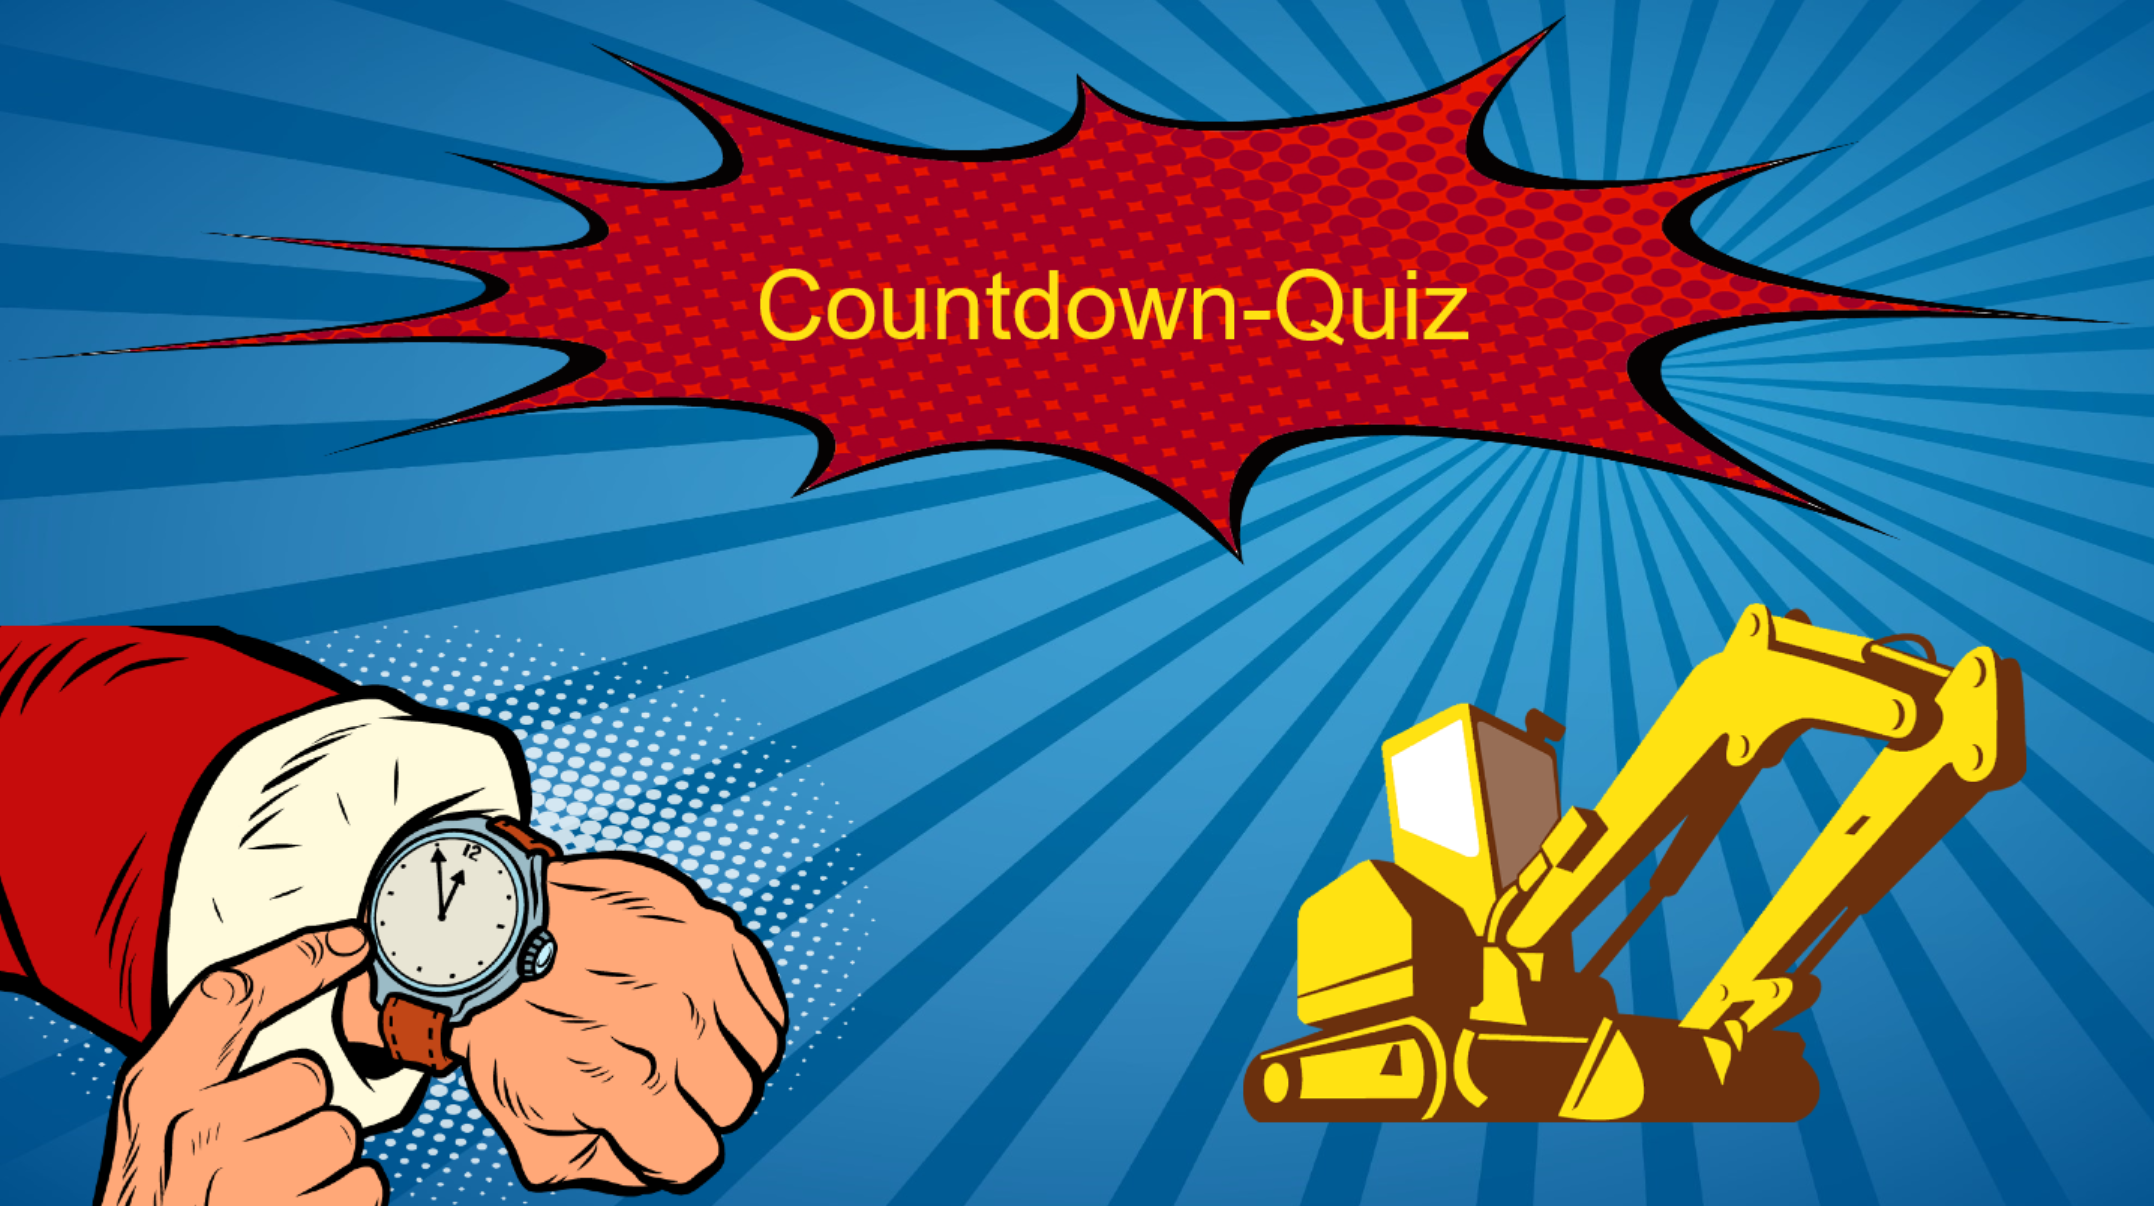 Countdown-Quiz course image